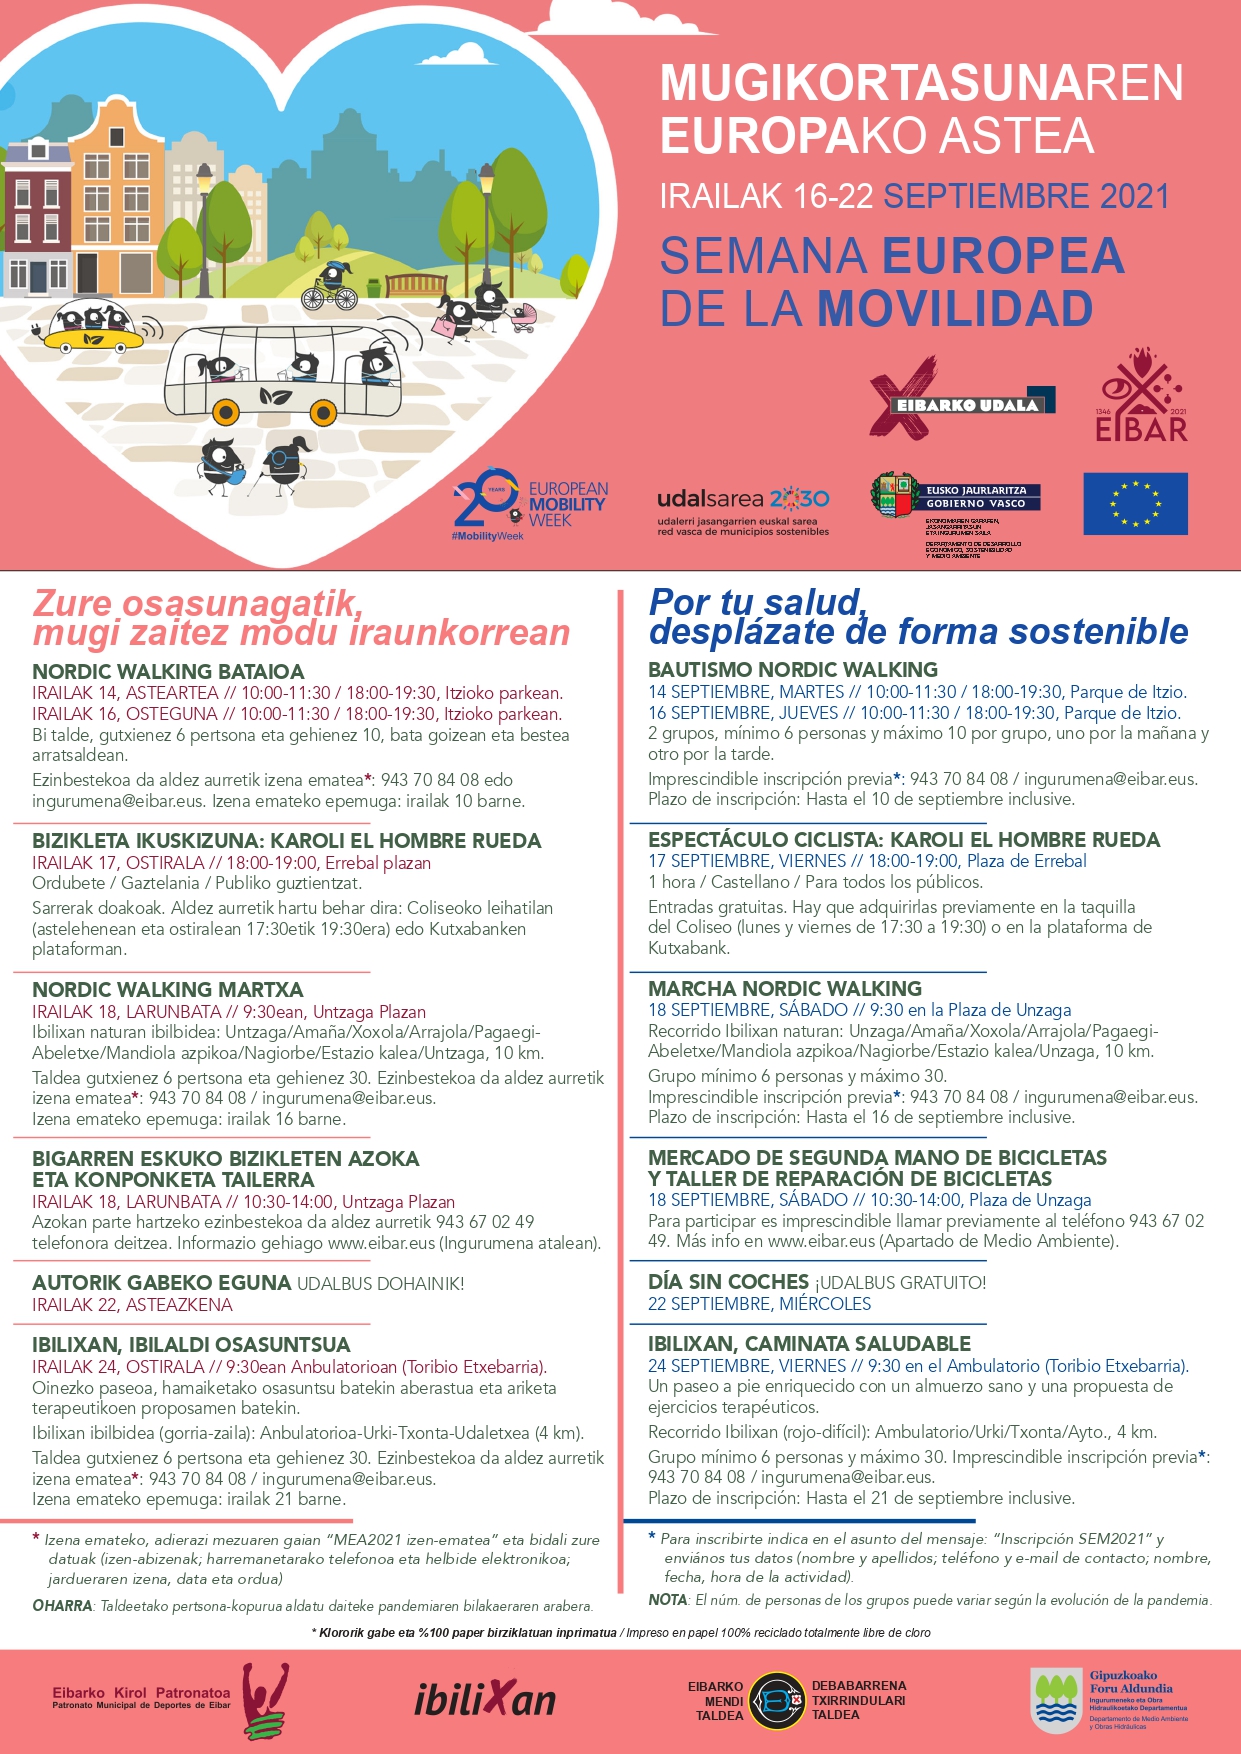 Eibar celebrará este mes la Semana Europea de la Movilidad con variadas actividades